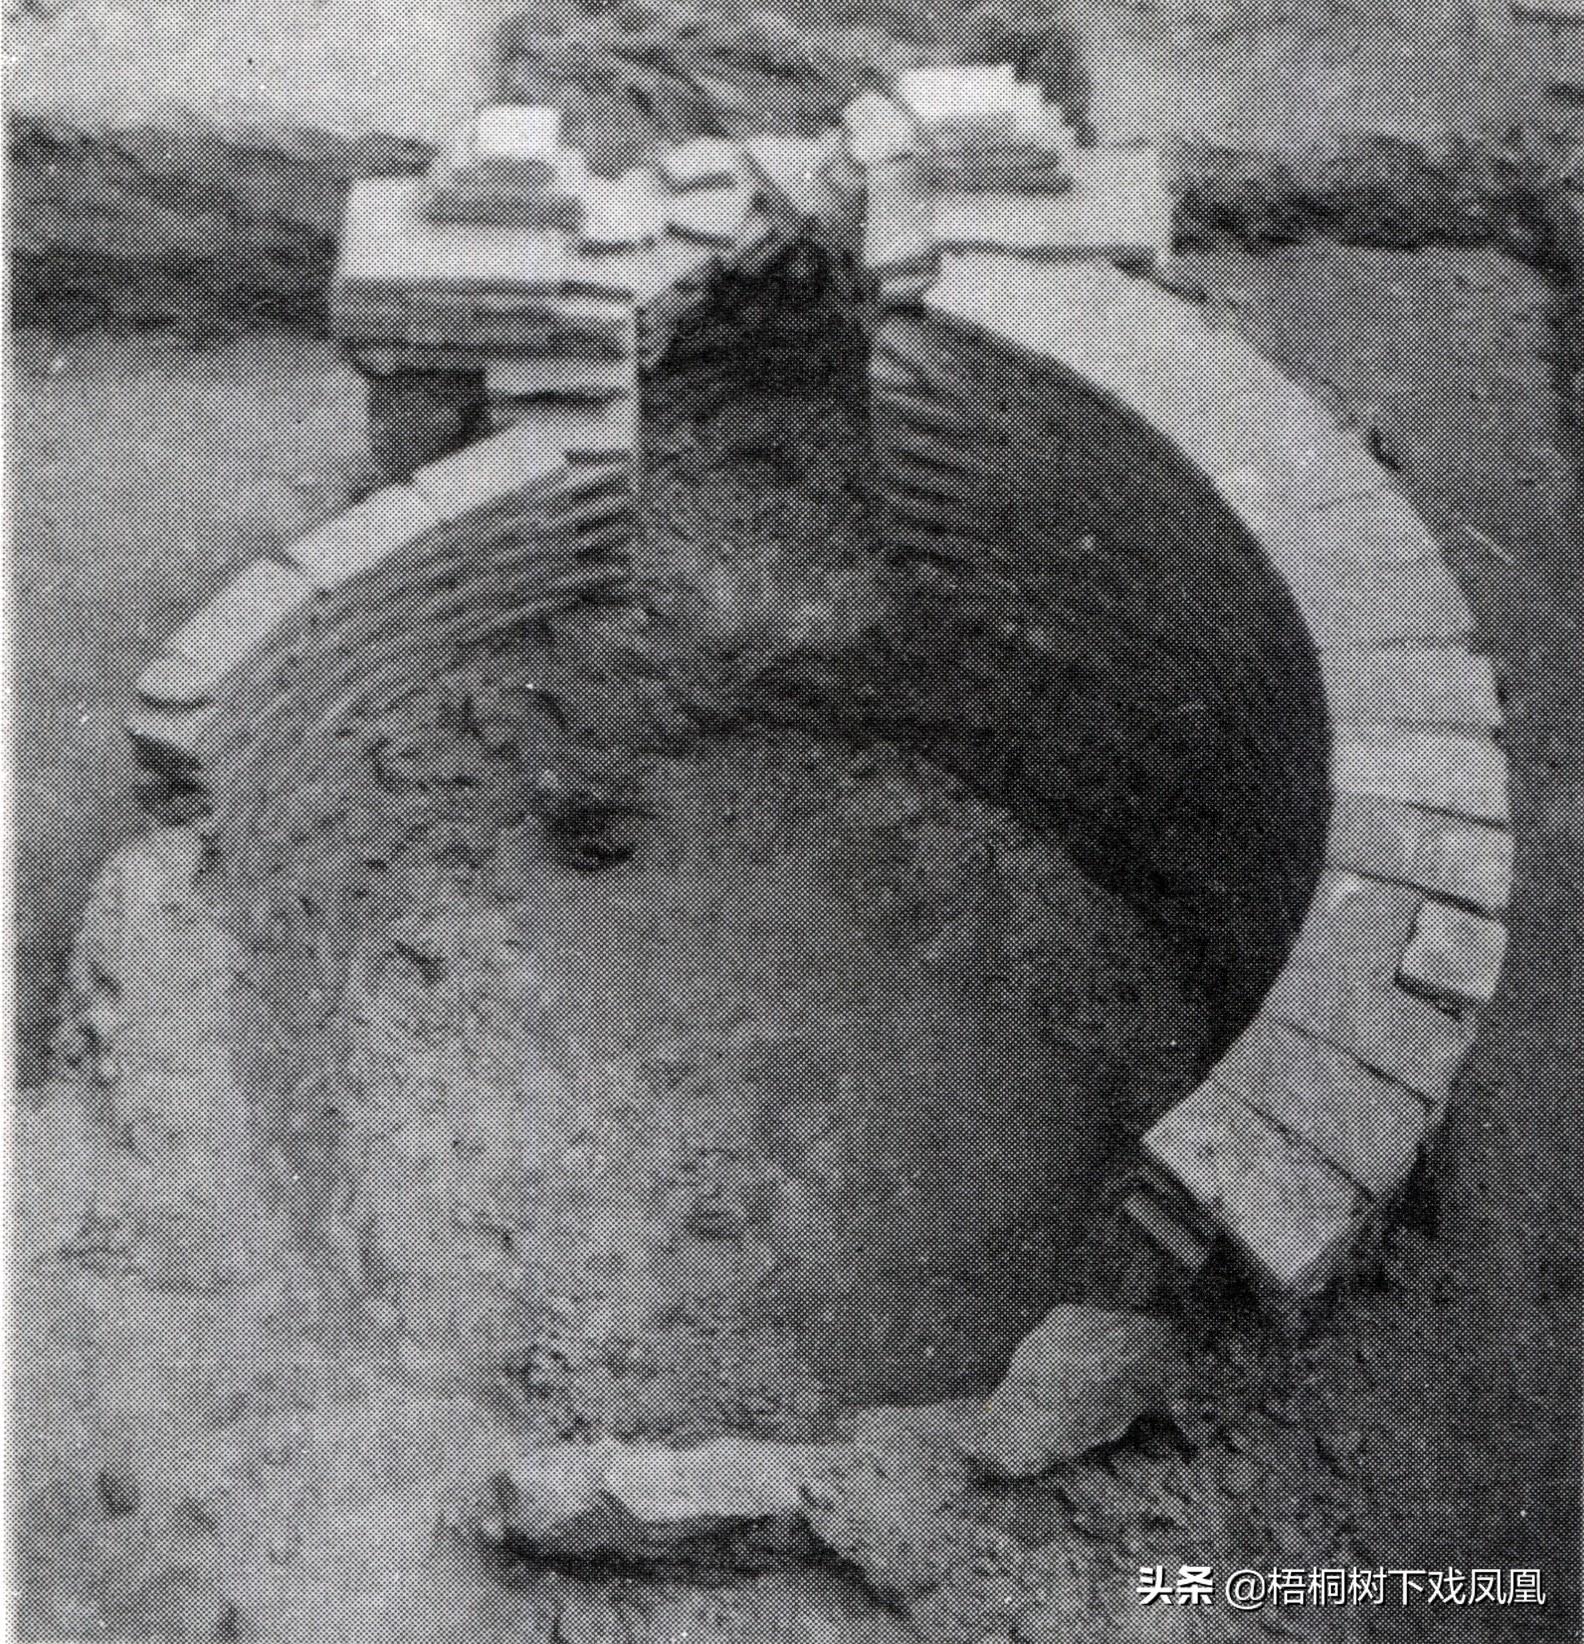 一元朝贵族墓设计成“复式户型”反盗阴宅，墓下有墓，含阴阳玄机